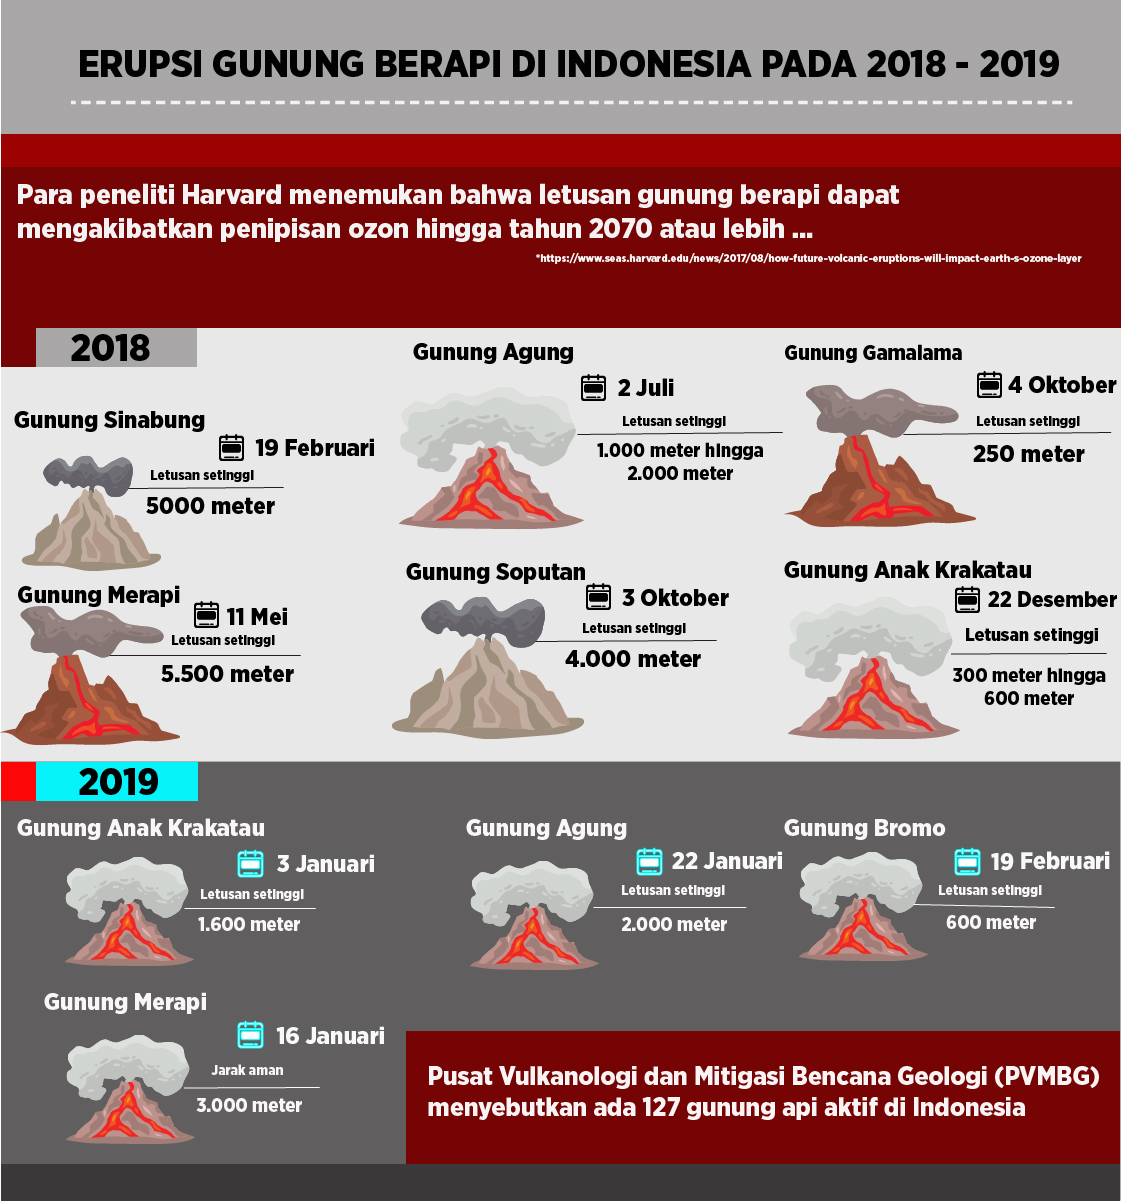 Erupsi gunung berapi di Indonesia selama tahun 2018 - 2019